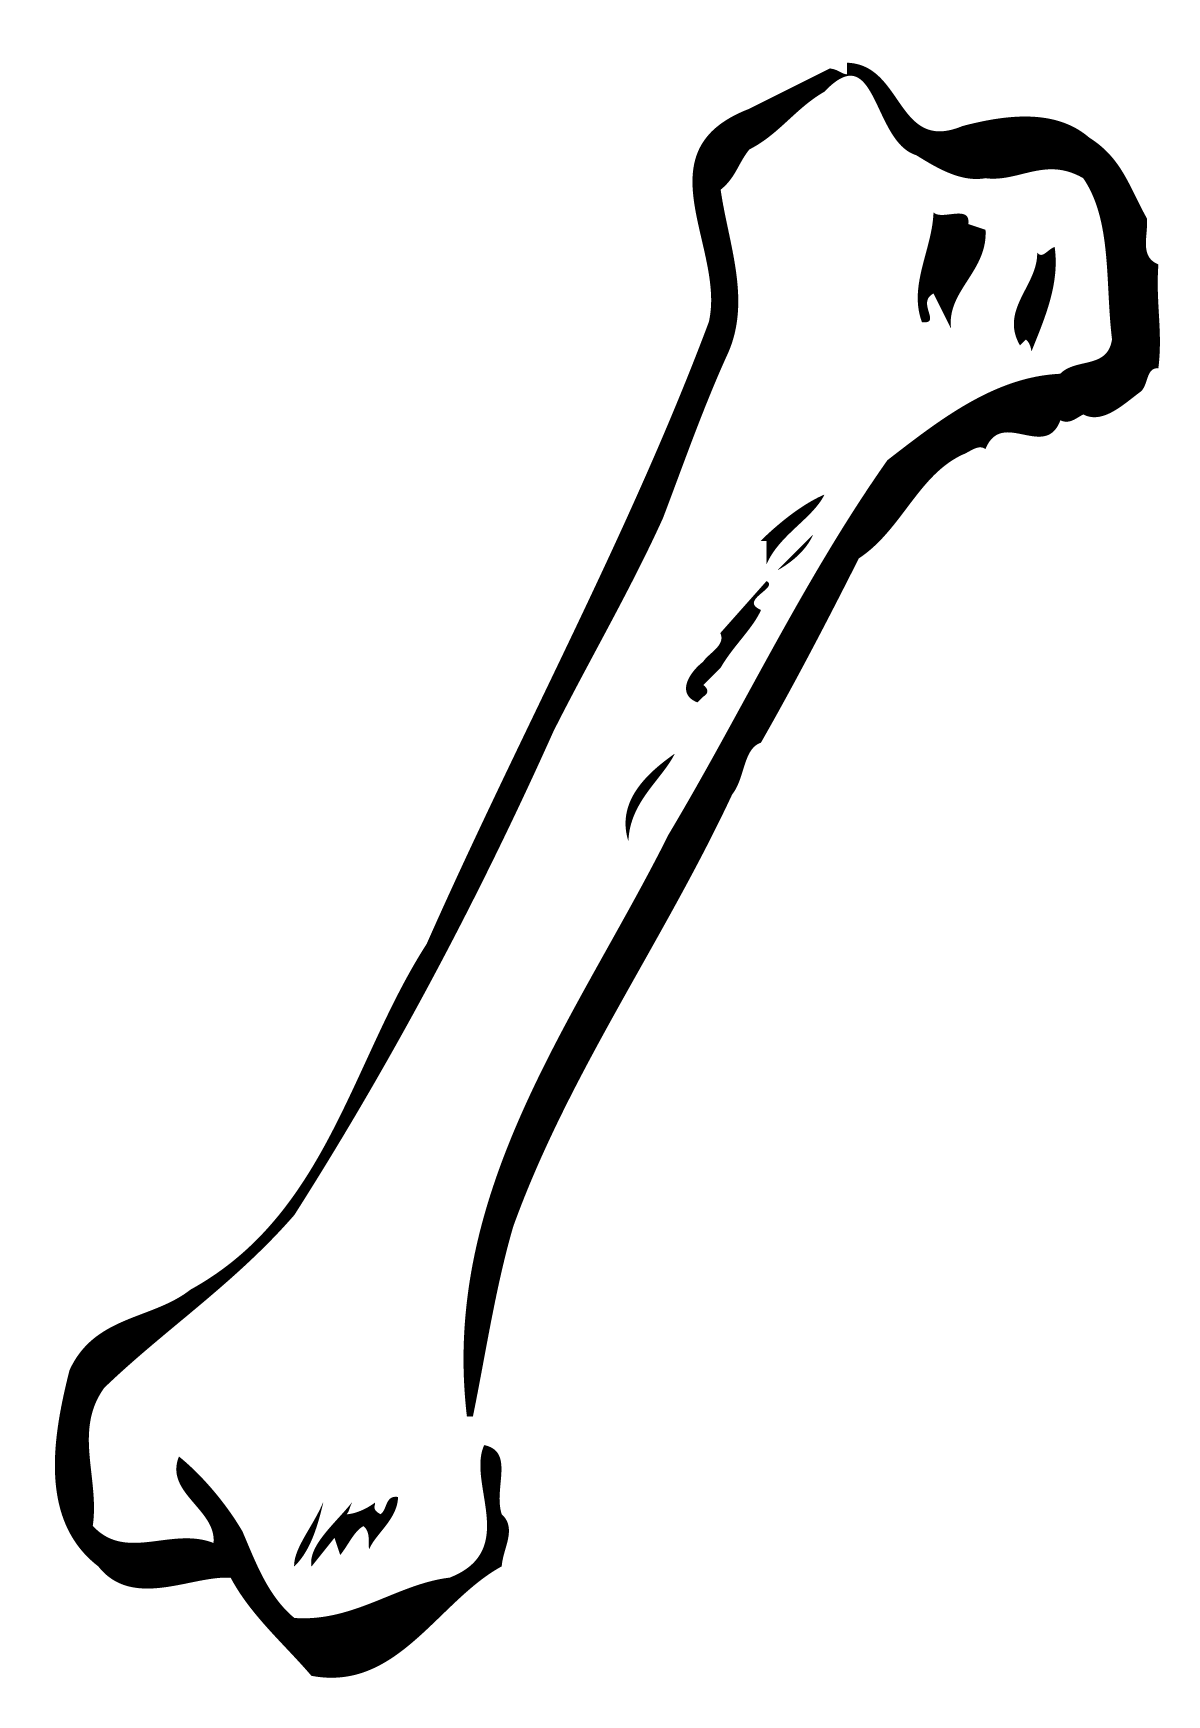 clipart human bones - photo #25